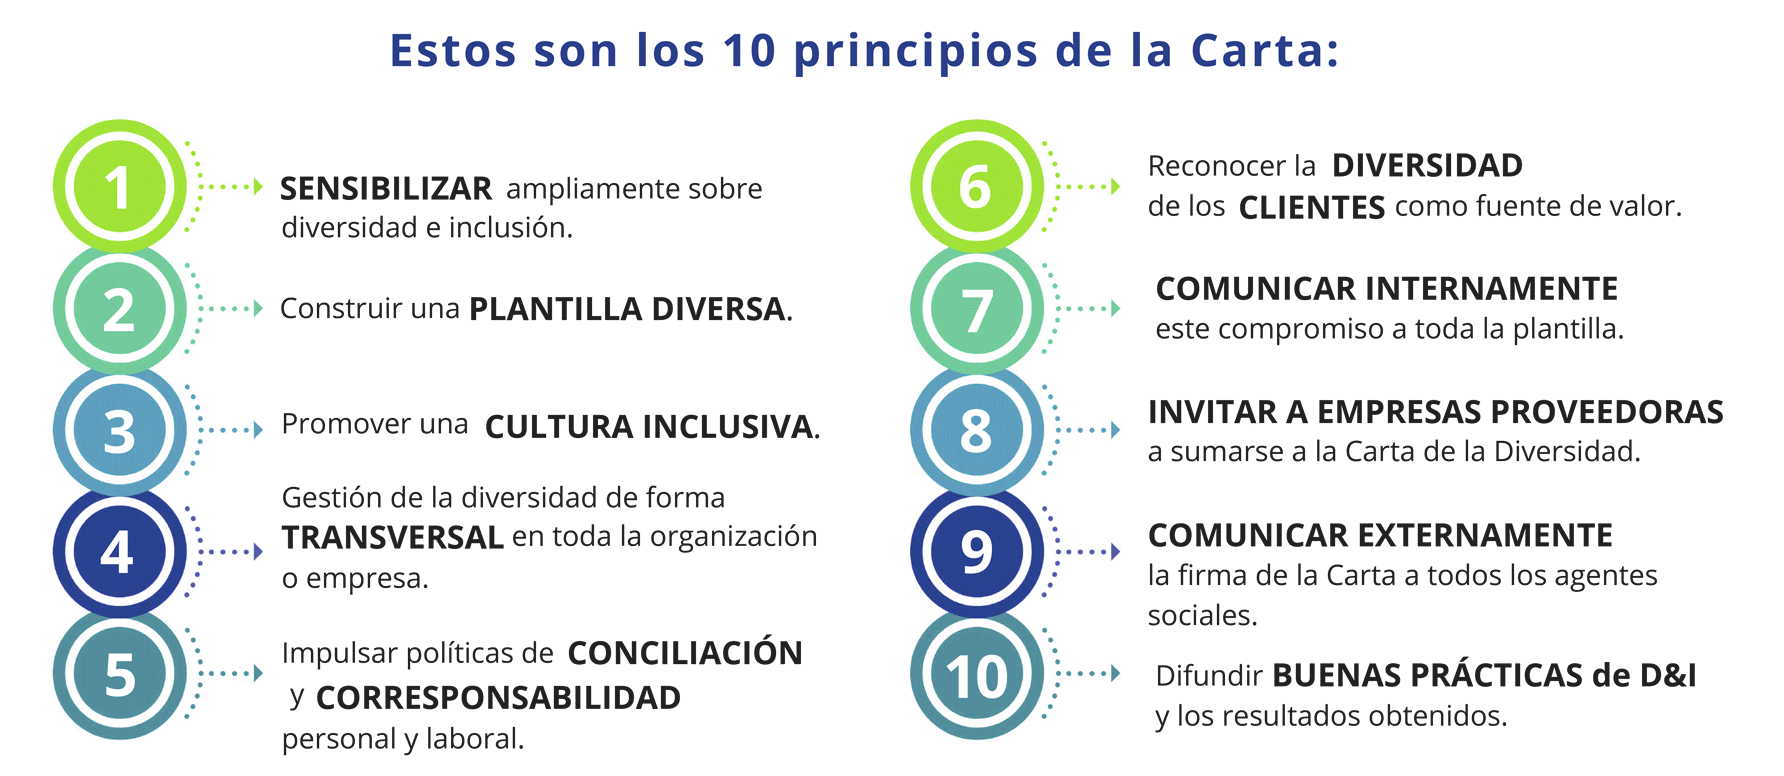 10 principios de la Carta